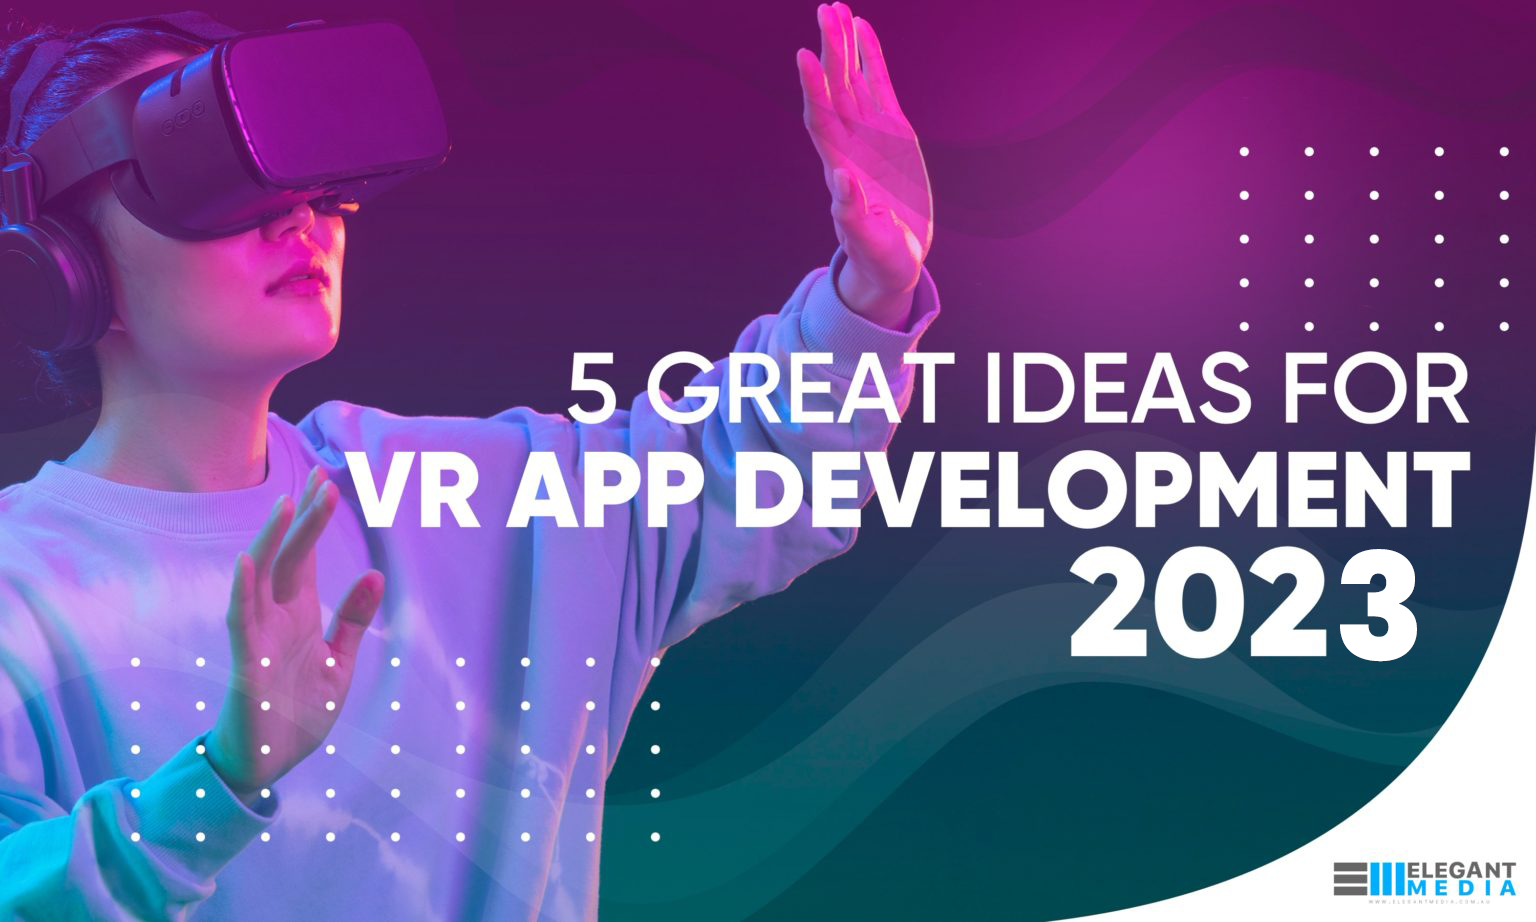 5 Great Ideas for Mobile VR App Development